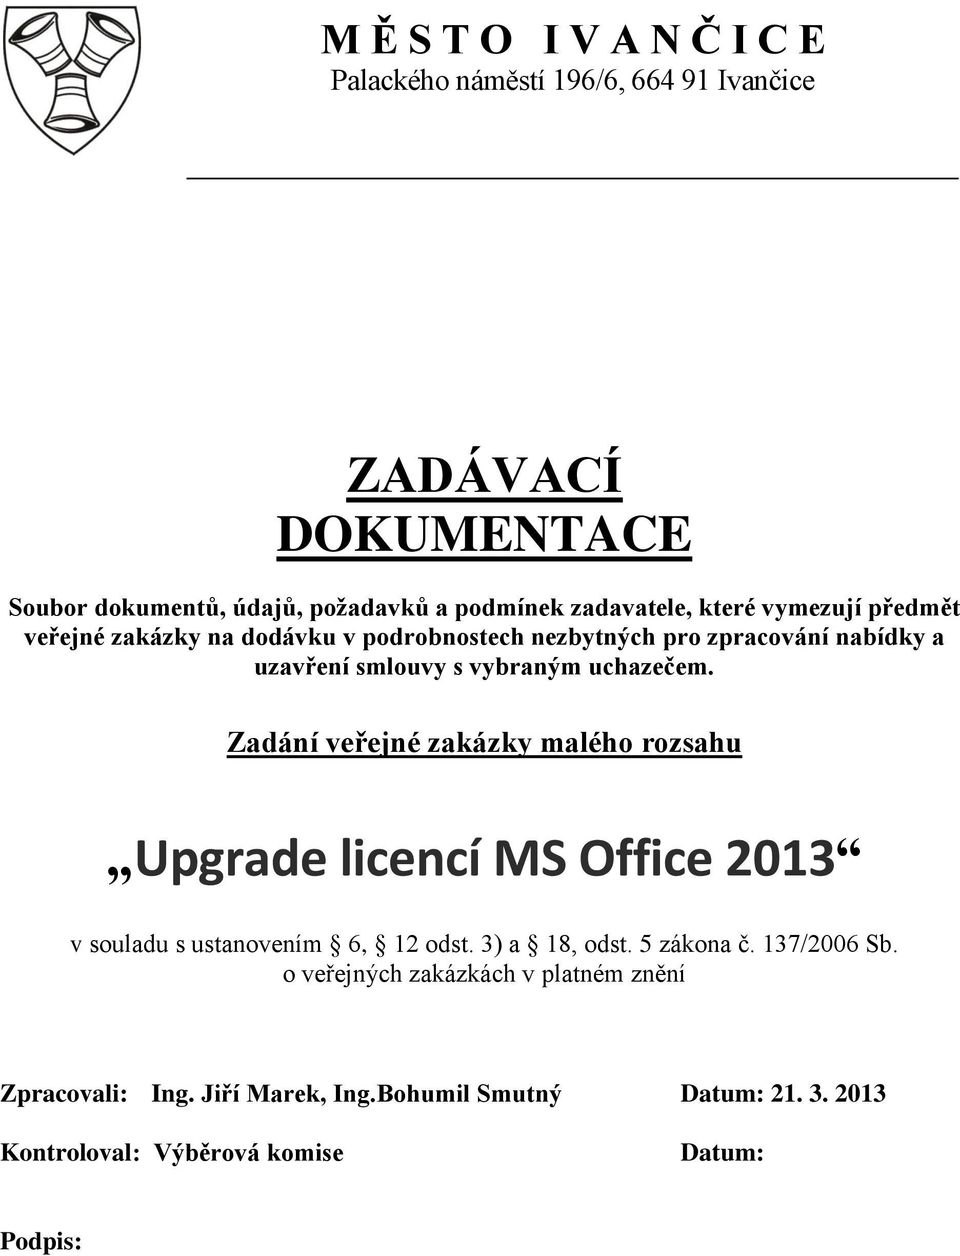 uchazečem. Zadání veřejné zakázky malého rozsahu Upgrade licencí MS Office 2013 v souladu s ustanovením 6, 12 odst. 3) a 18, odst. 5 zákona č.